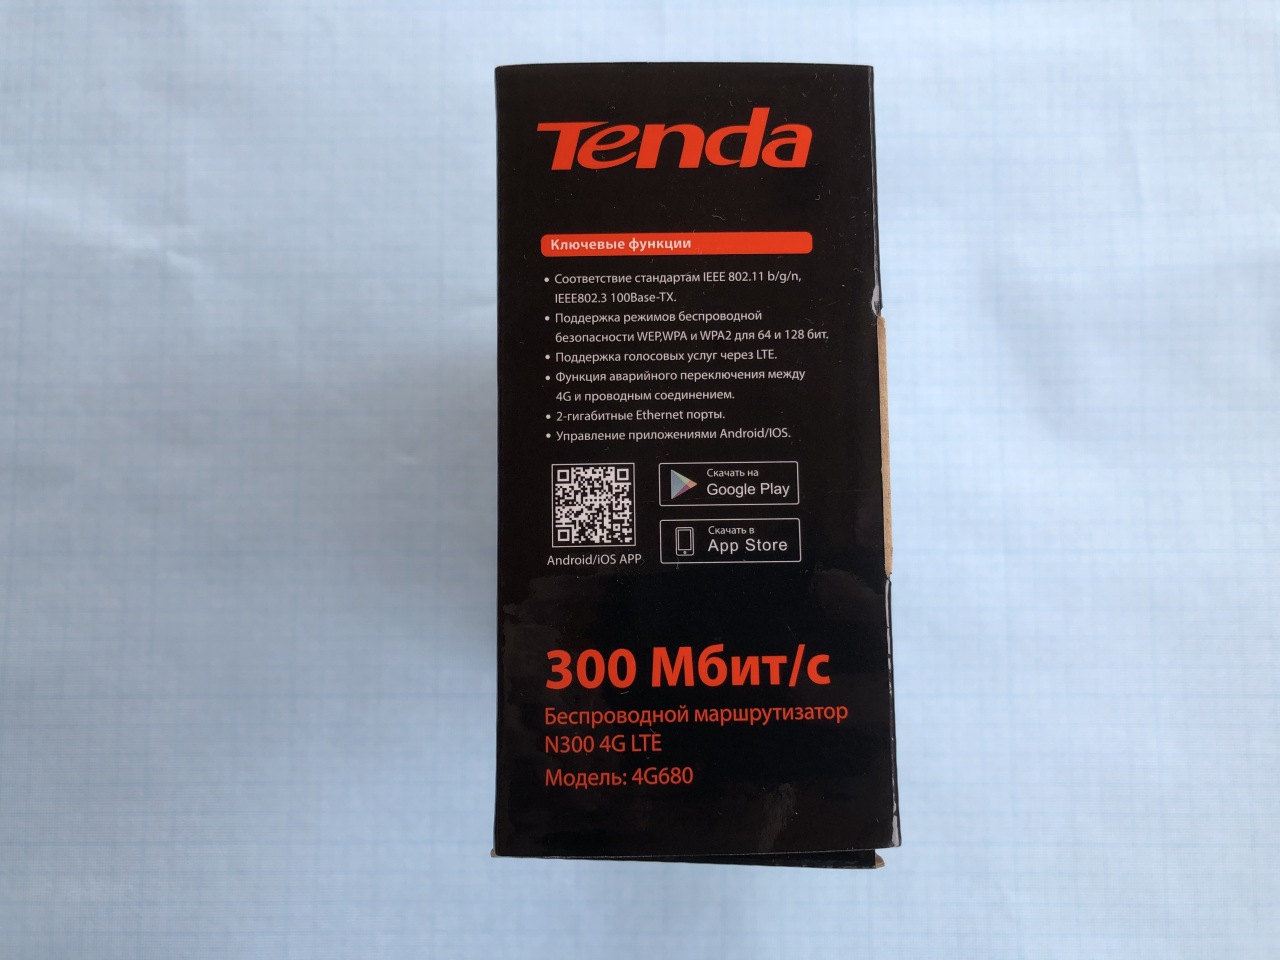 Обзор и тестирование 4G роутера Tenda 4G680 V2